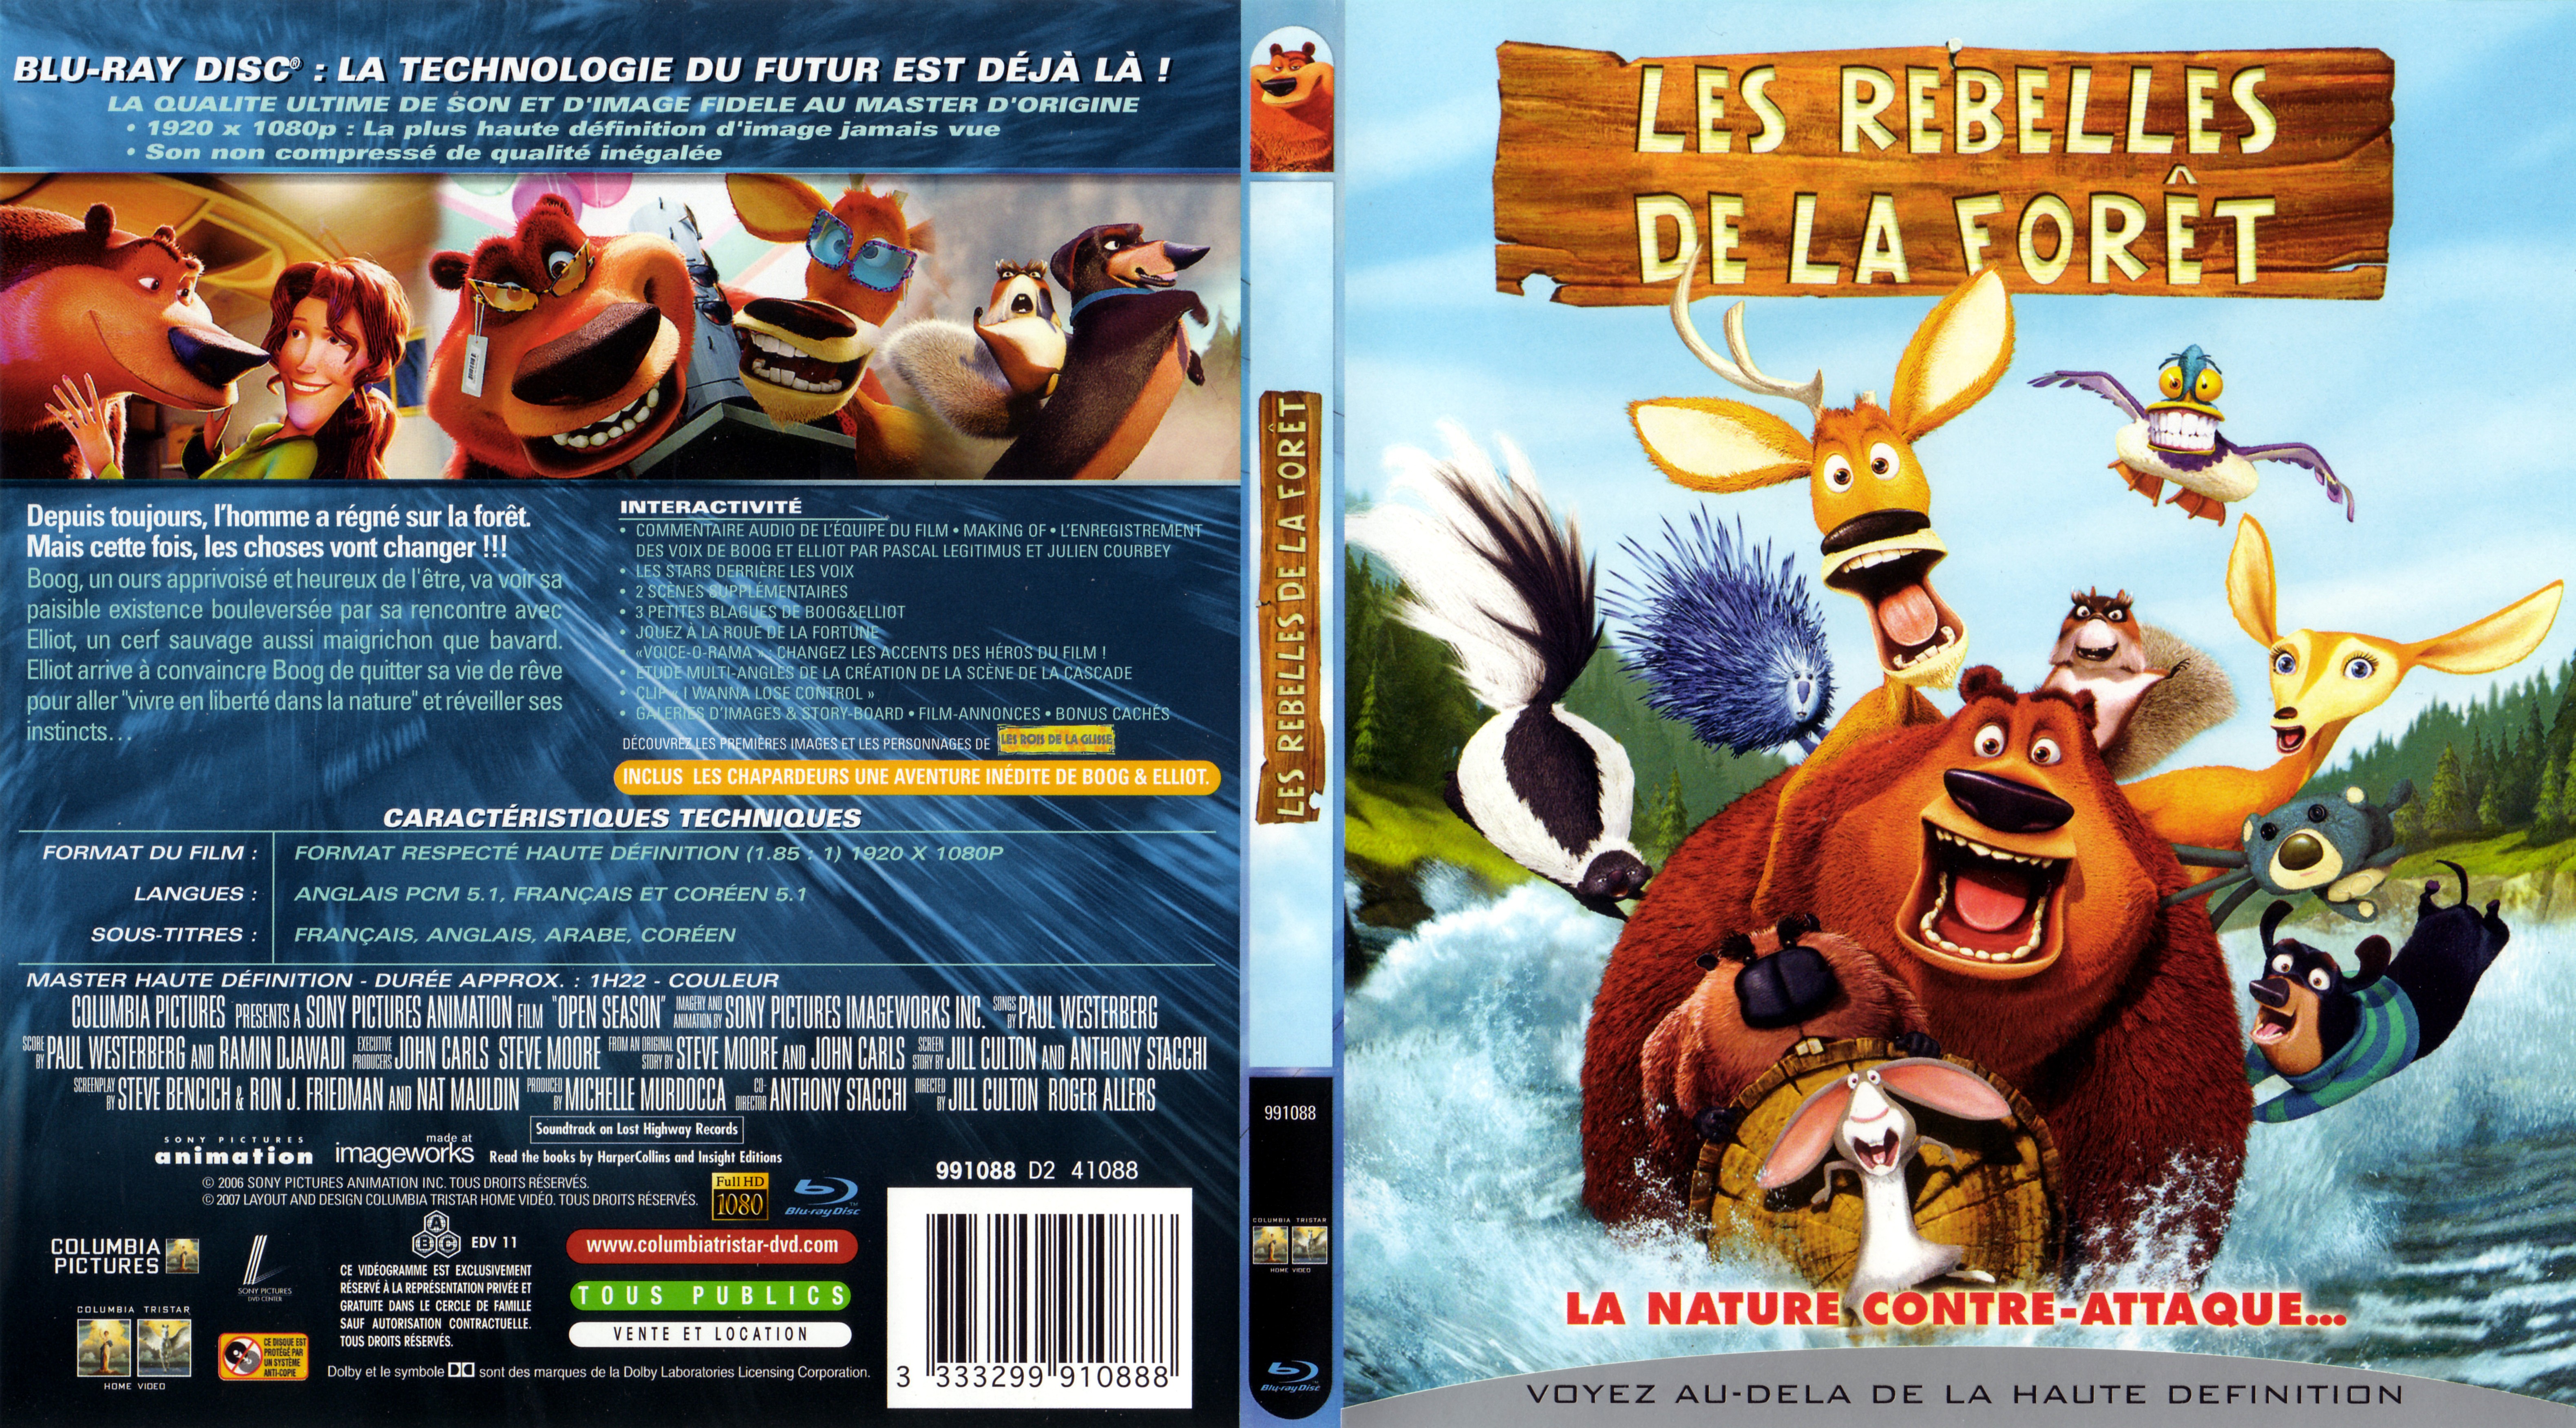 Jaquette DVD Les rebelles de la foret (BLU-RAY)